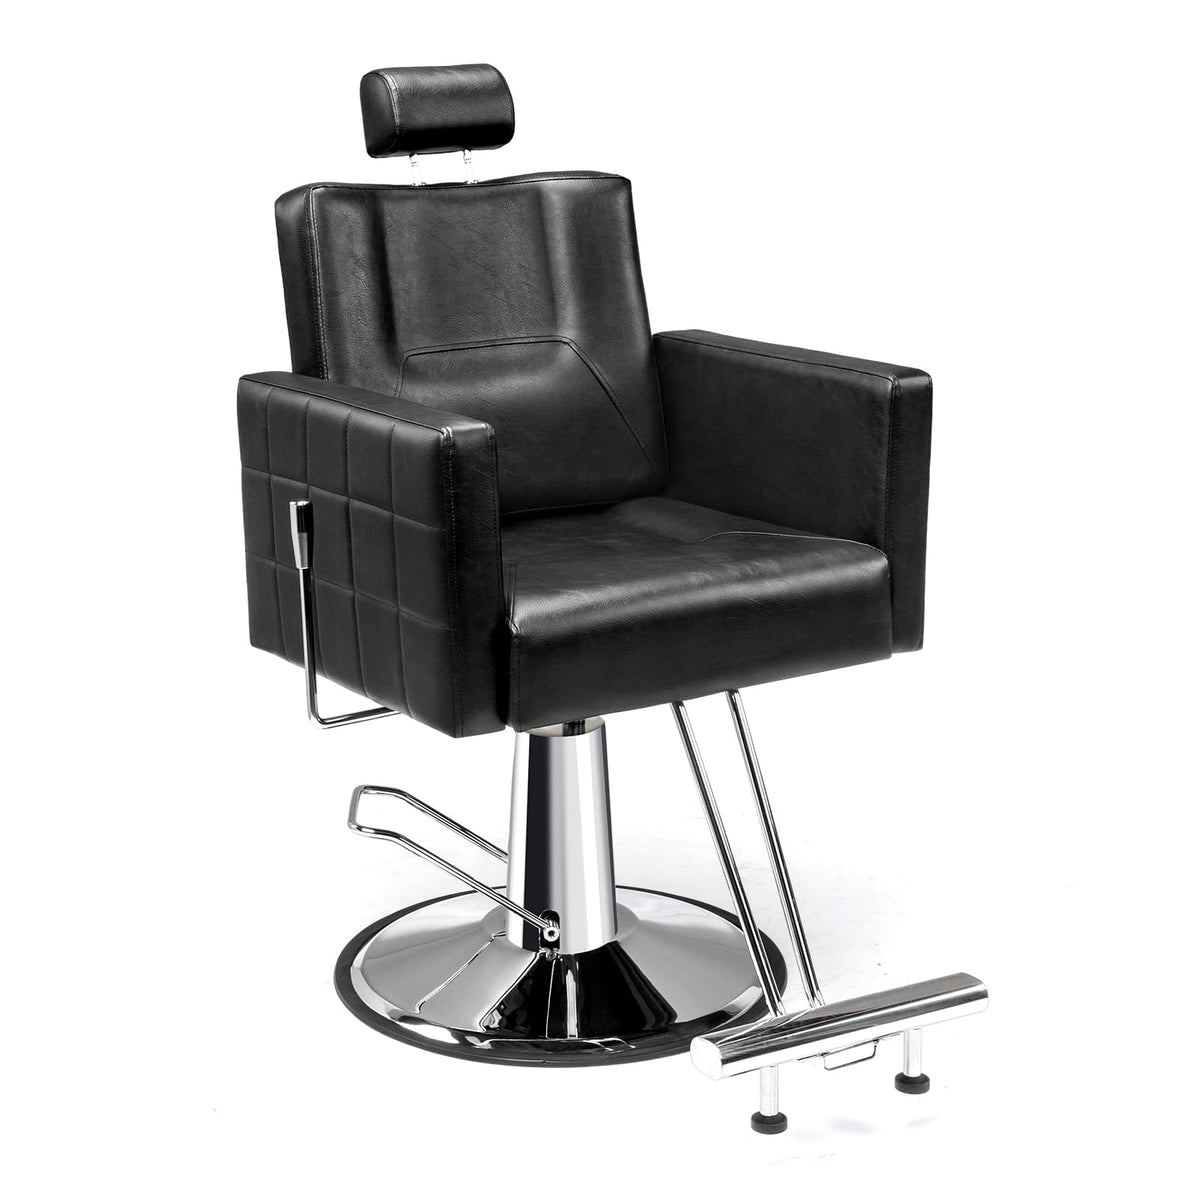 OmySalon SC2301 All Purpose Heavy Duty Hydraulic Reclining Hair Salon Chair w/Headrest